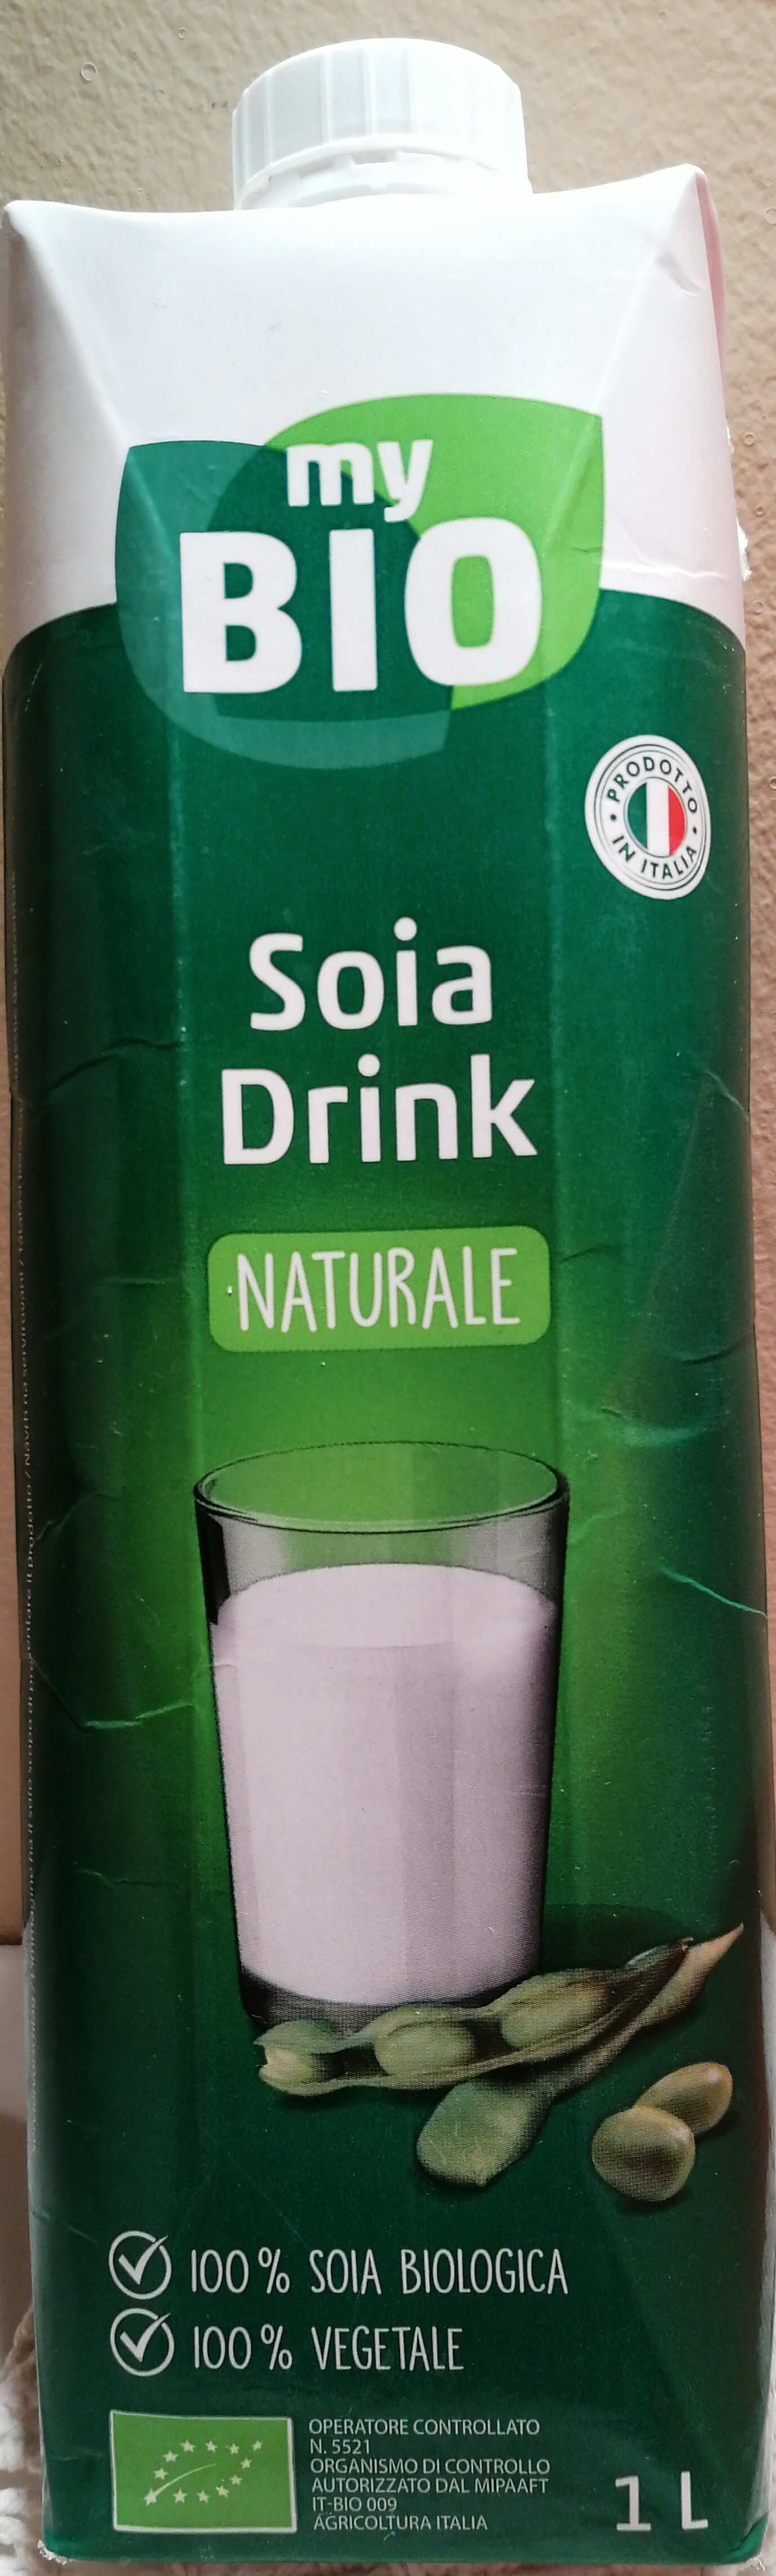 Soia Drink - Prodotto